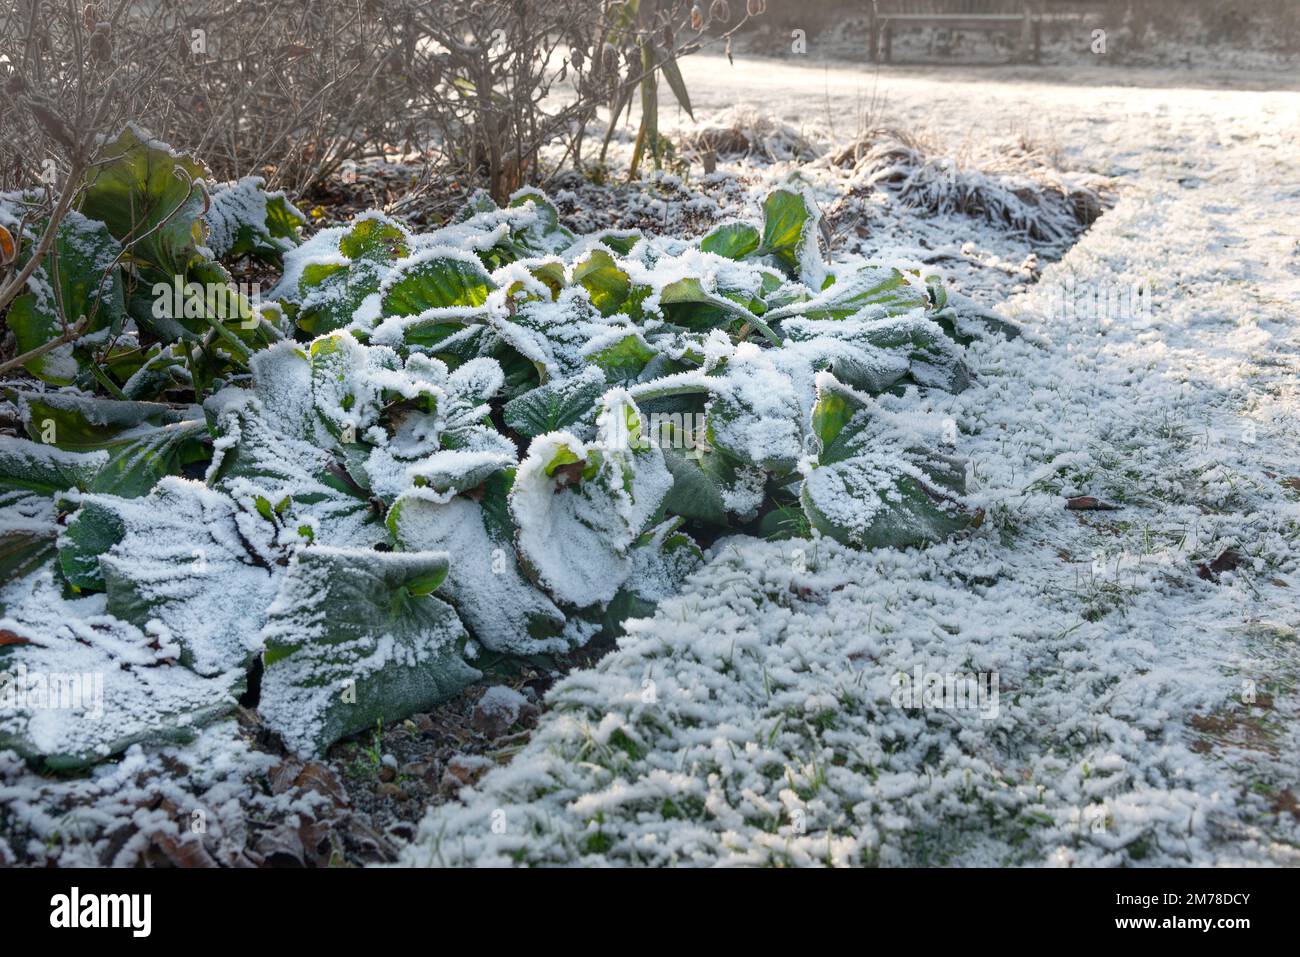 La neige et le gel couvraient les plantes de Bergenia dans une frontière herbacée prise au soleil du matin de décembre - Berkshire, Angleterre, Royaume-Uni Banque D'Images